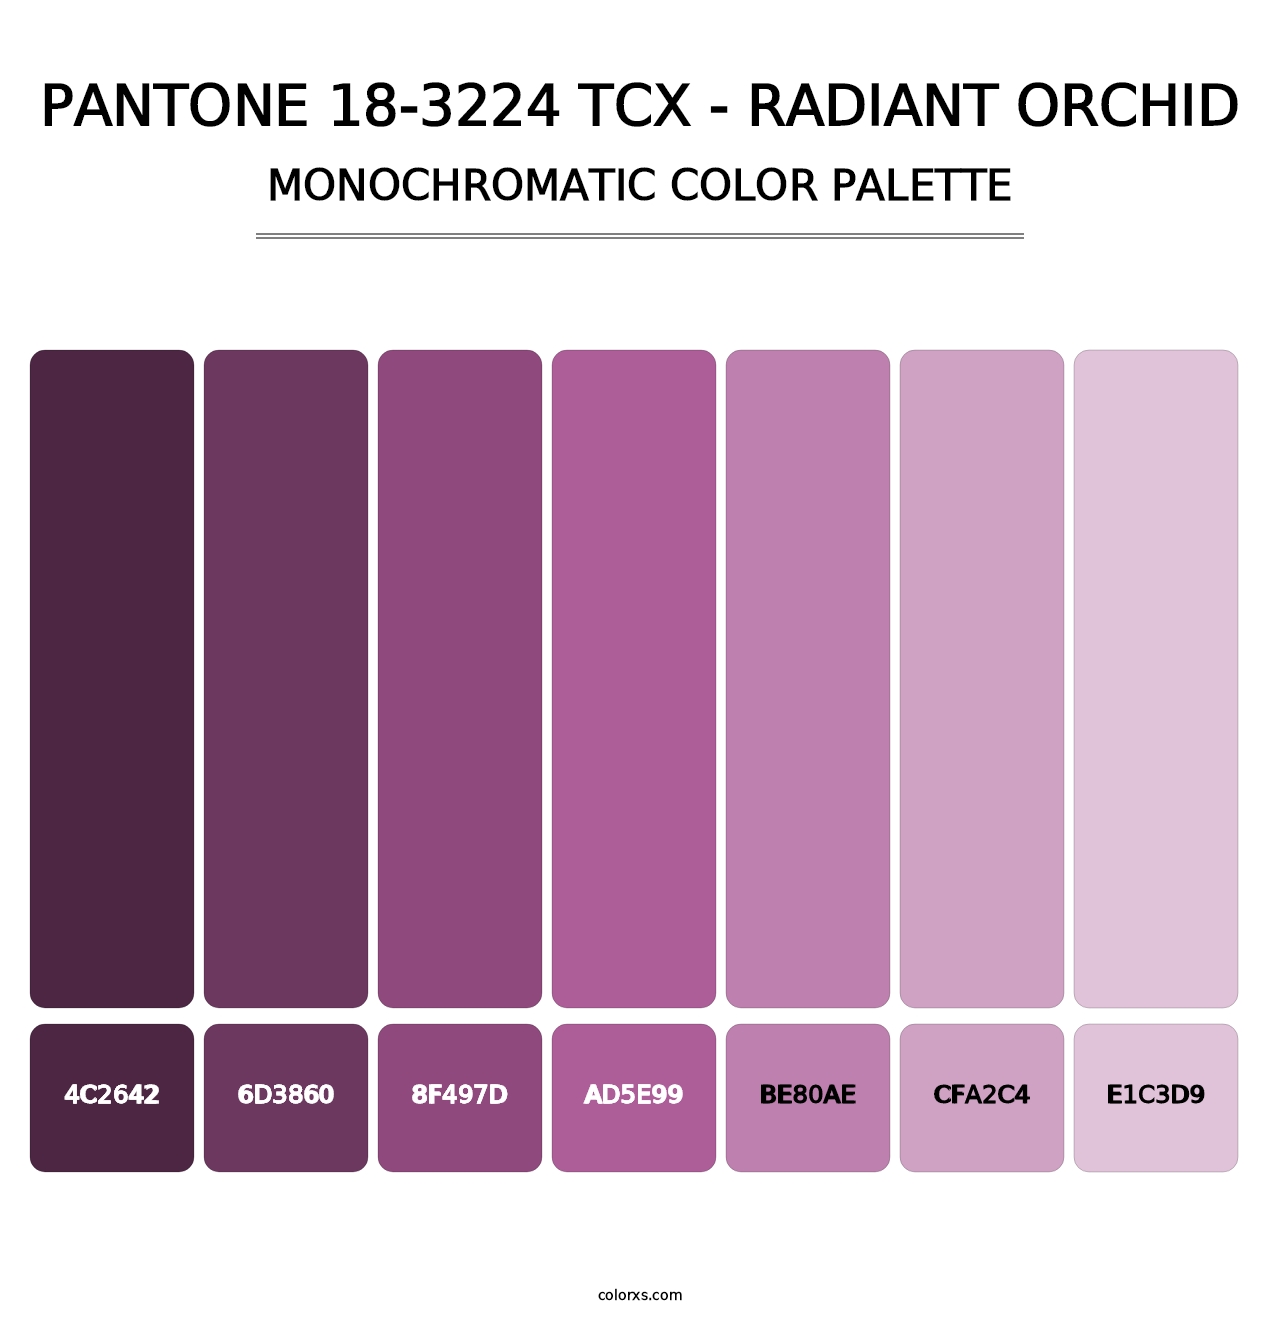 PANTONE 18-3224 TCX - Radiant Orchid - Monochromatic Color Palette